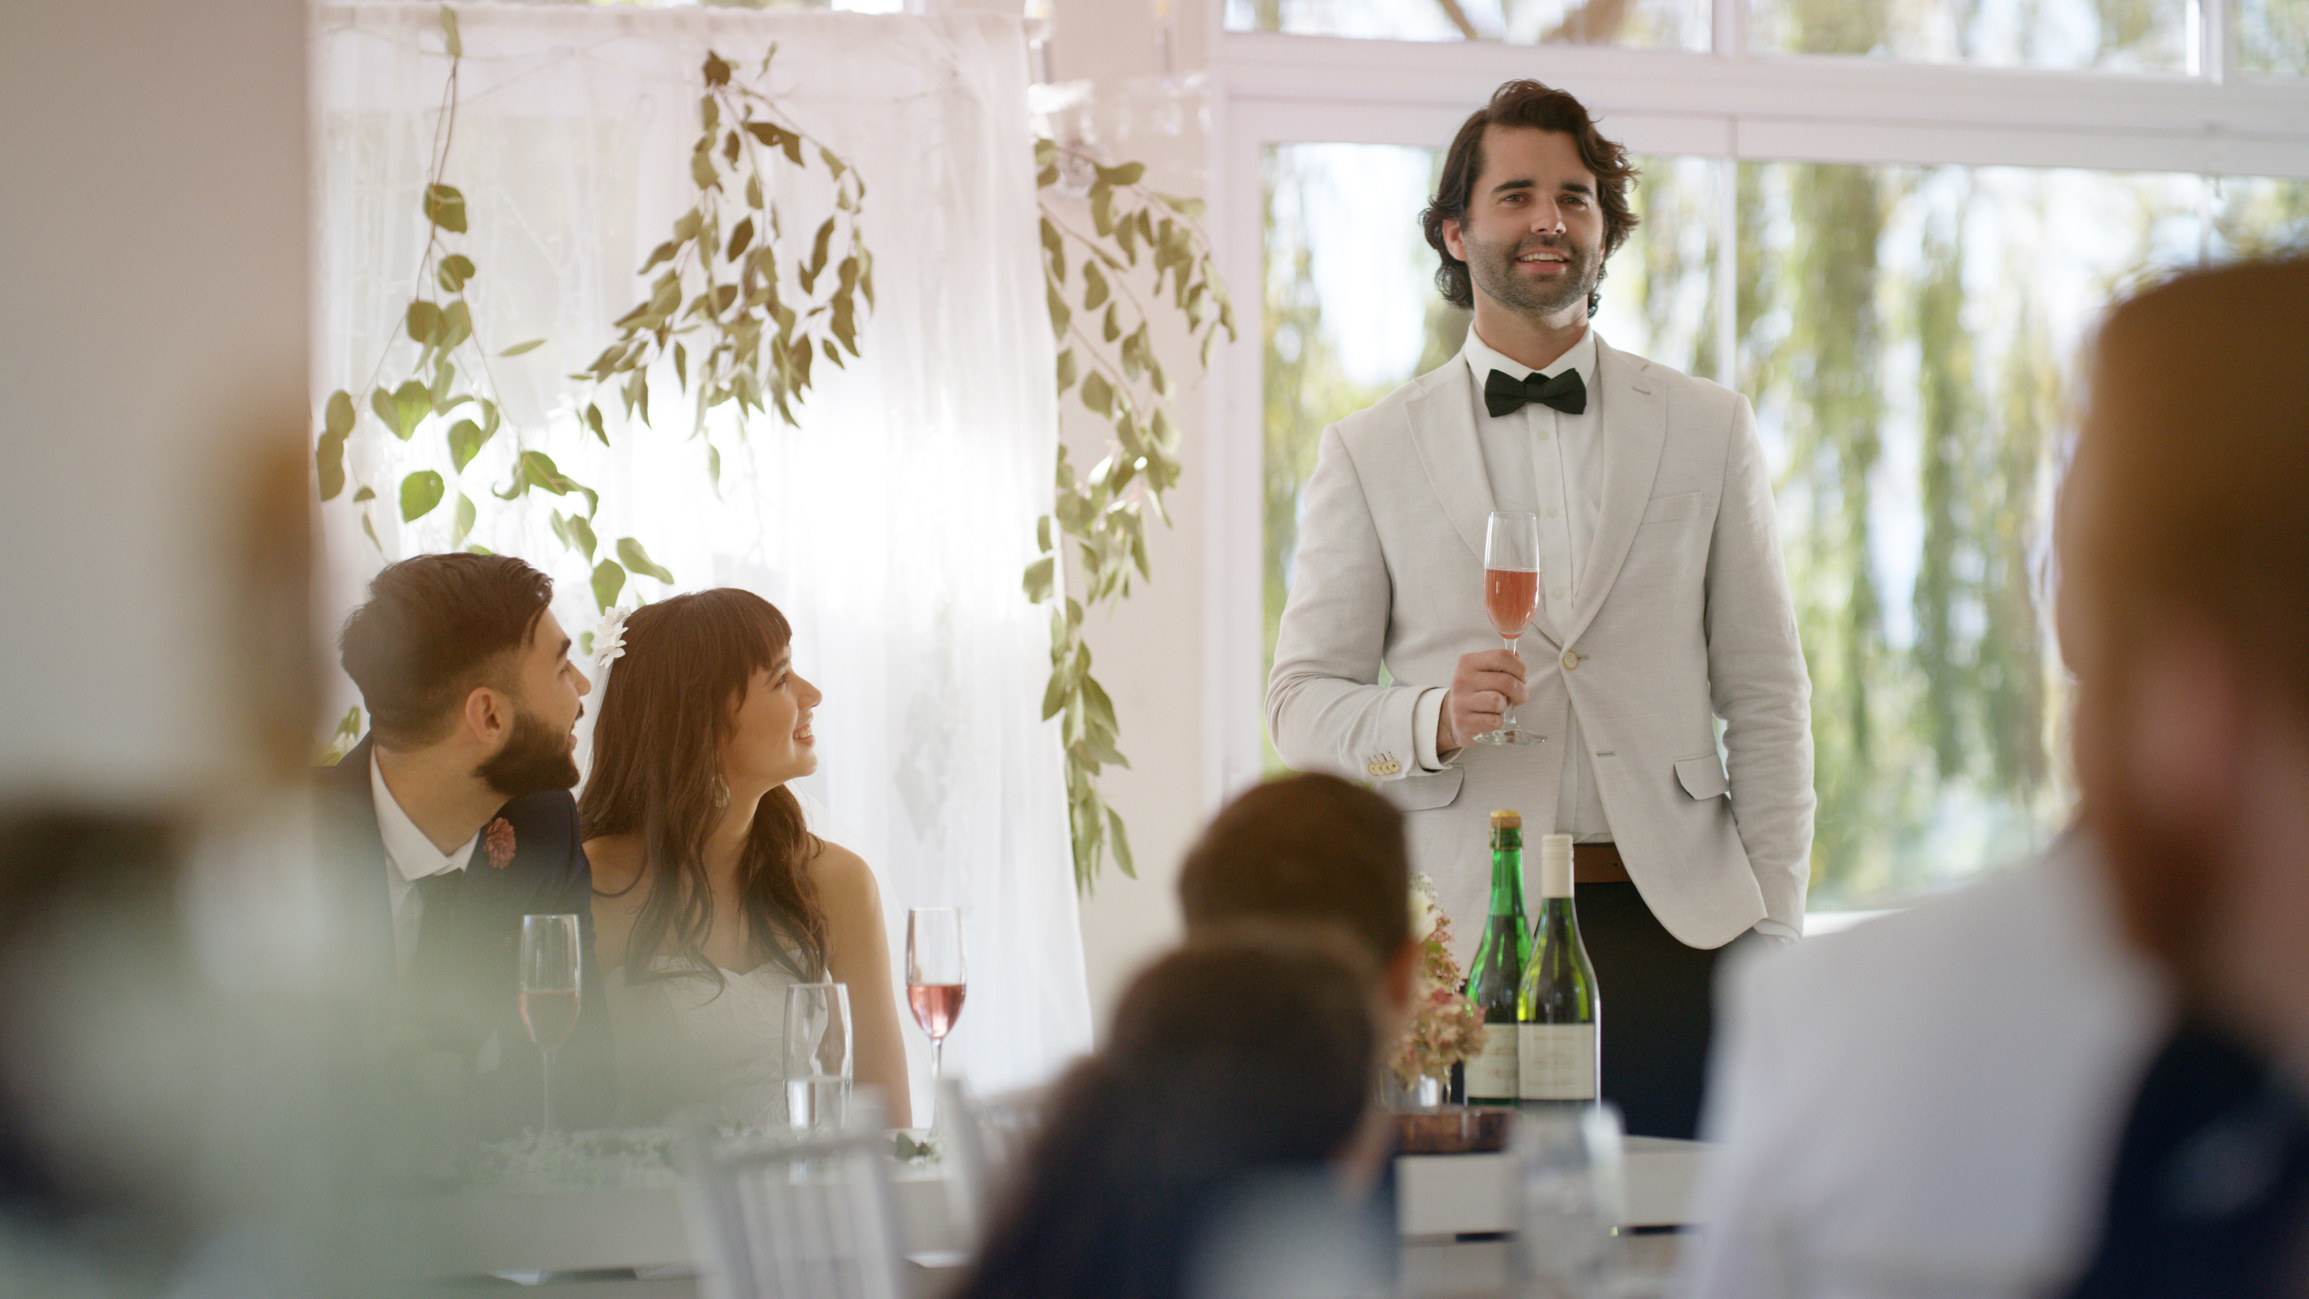 A man giving a speech at a wedding